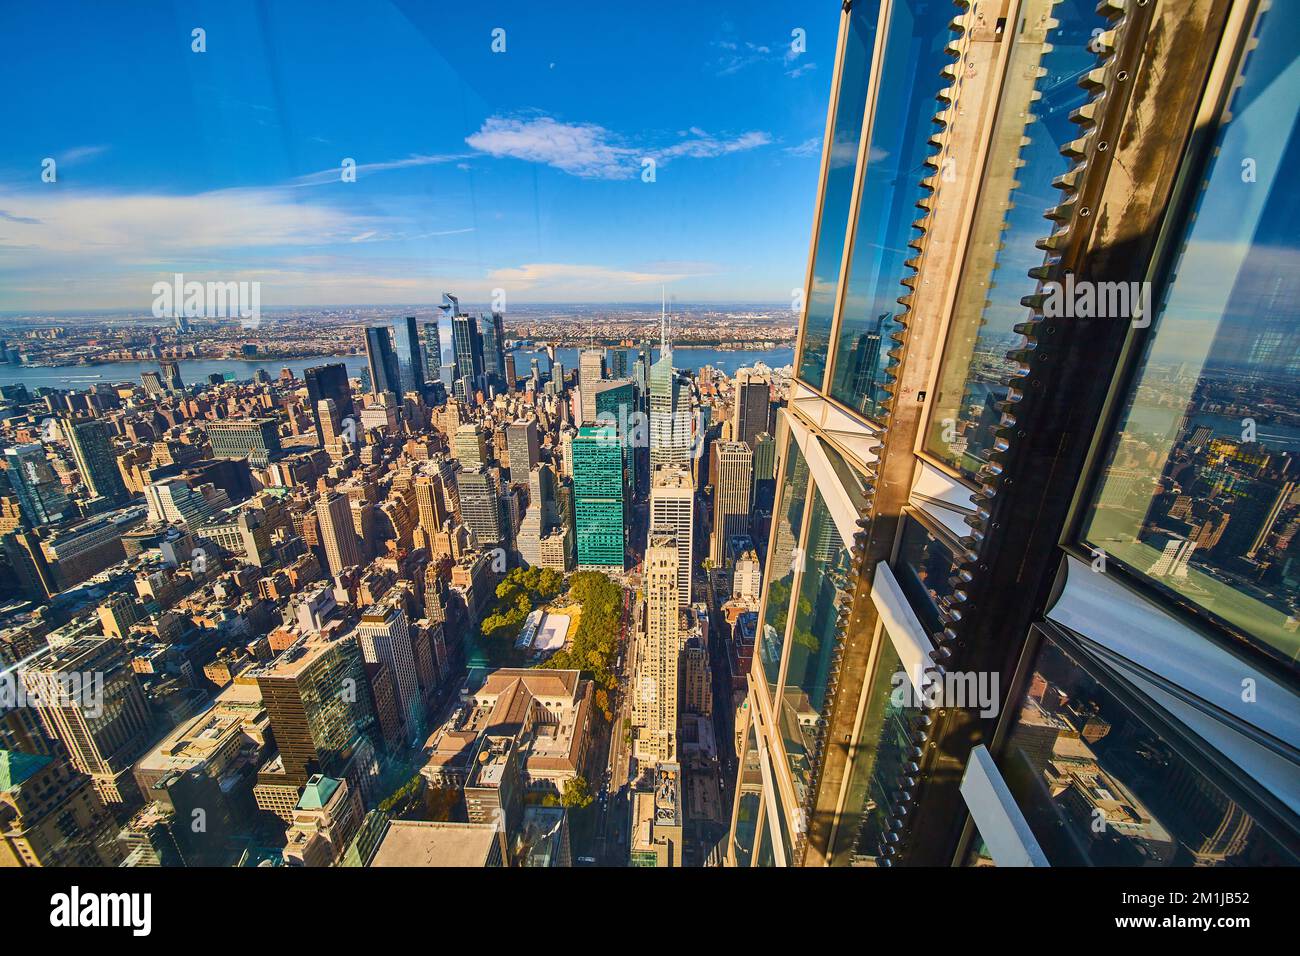 Vue sur le bord extérieur du gratte-ciel avec des engins pour l'ascenseur surplombant la ville de New York Banque D'Images